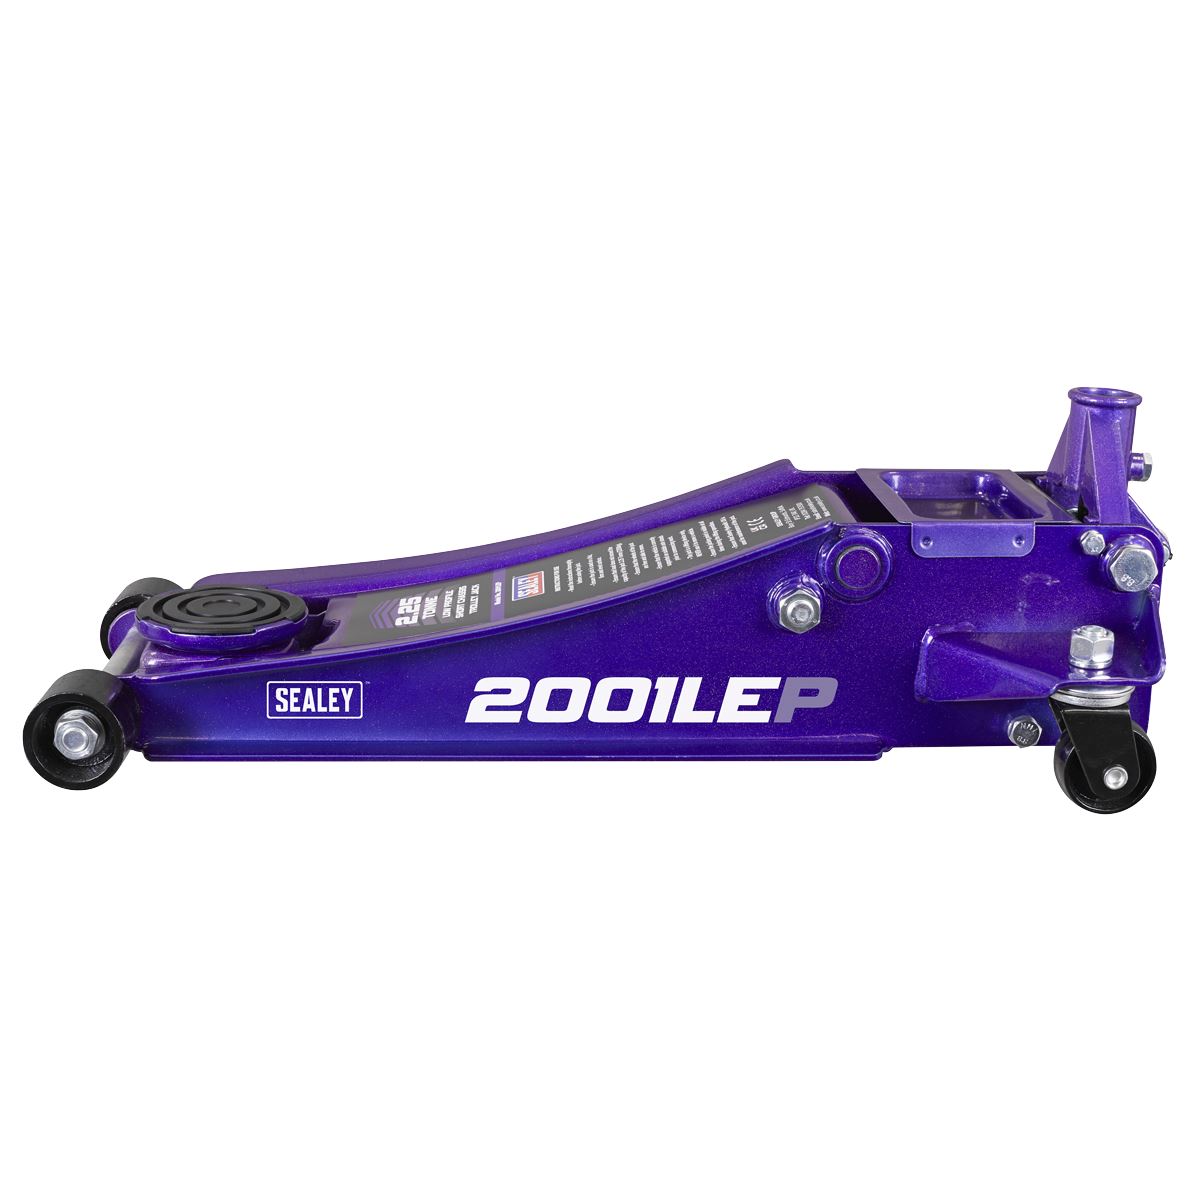 Sealey Low Profile Rocket Lift Trolley Jack 2.25 Tonne - Purple